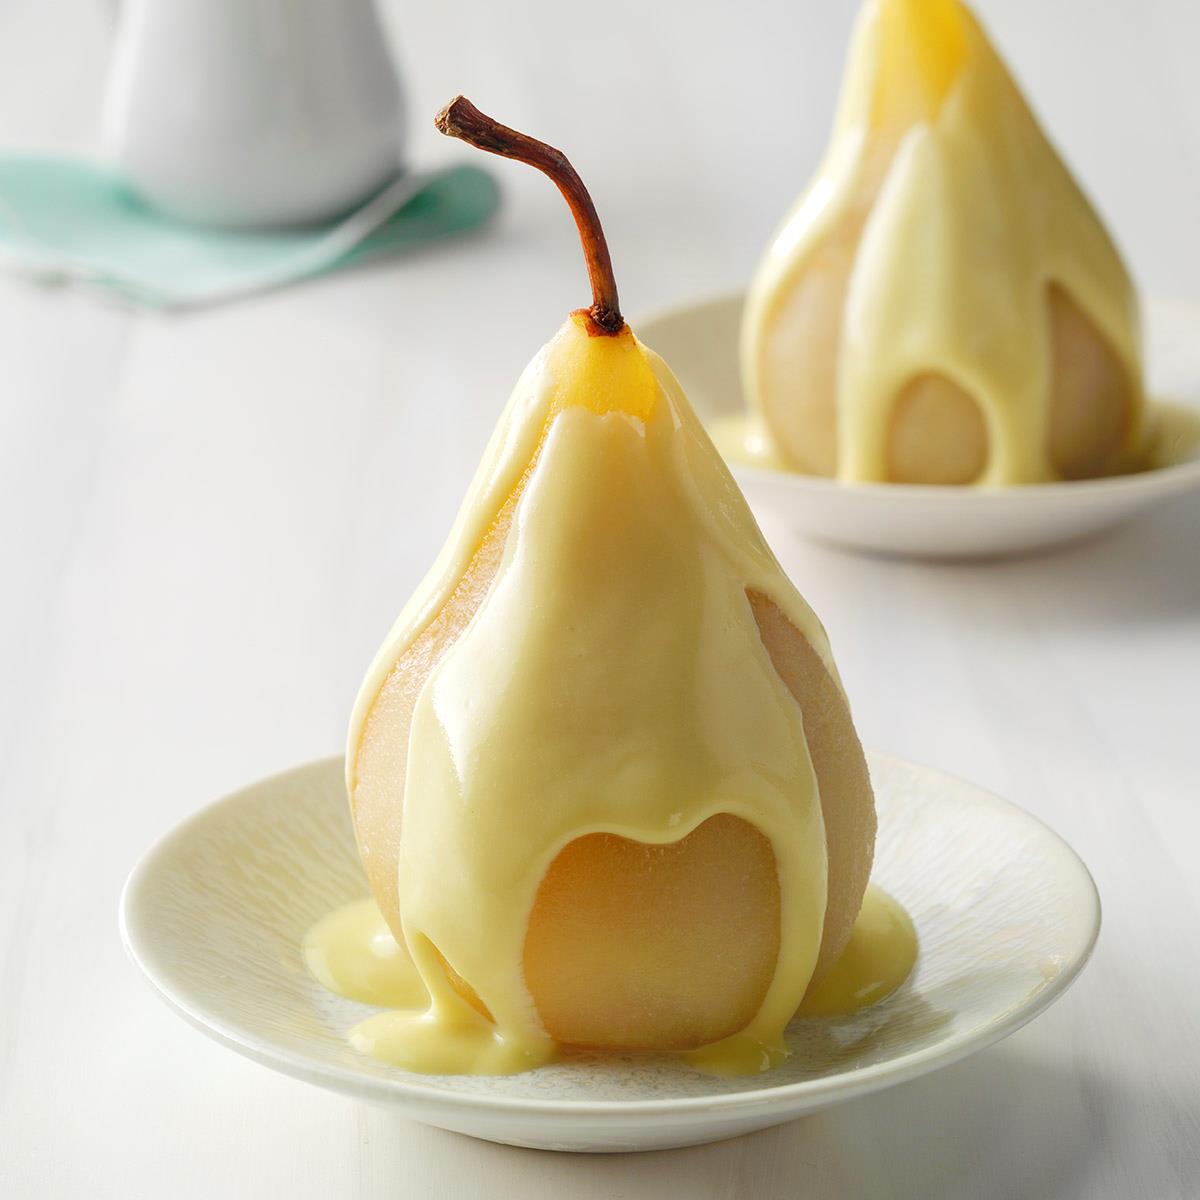 Slip schoenen weigeren gesprek Poached Pears with Vanilla Sauce Recipe: How to Make It